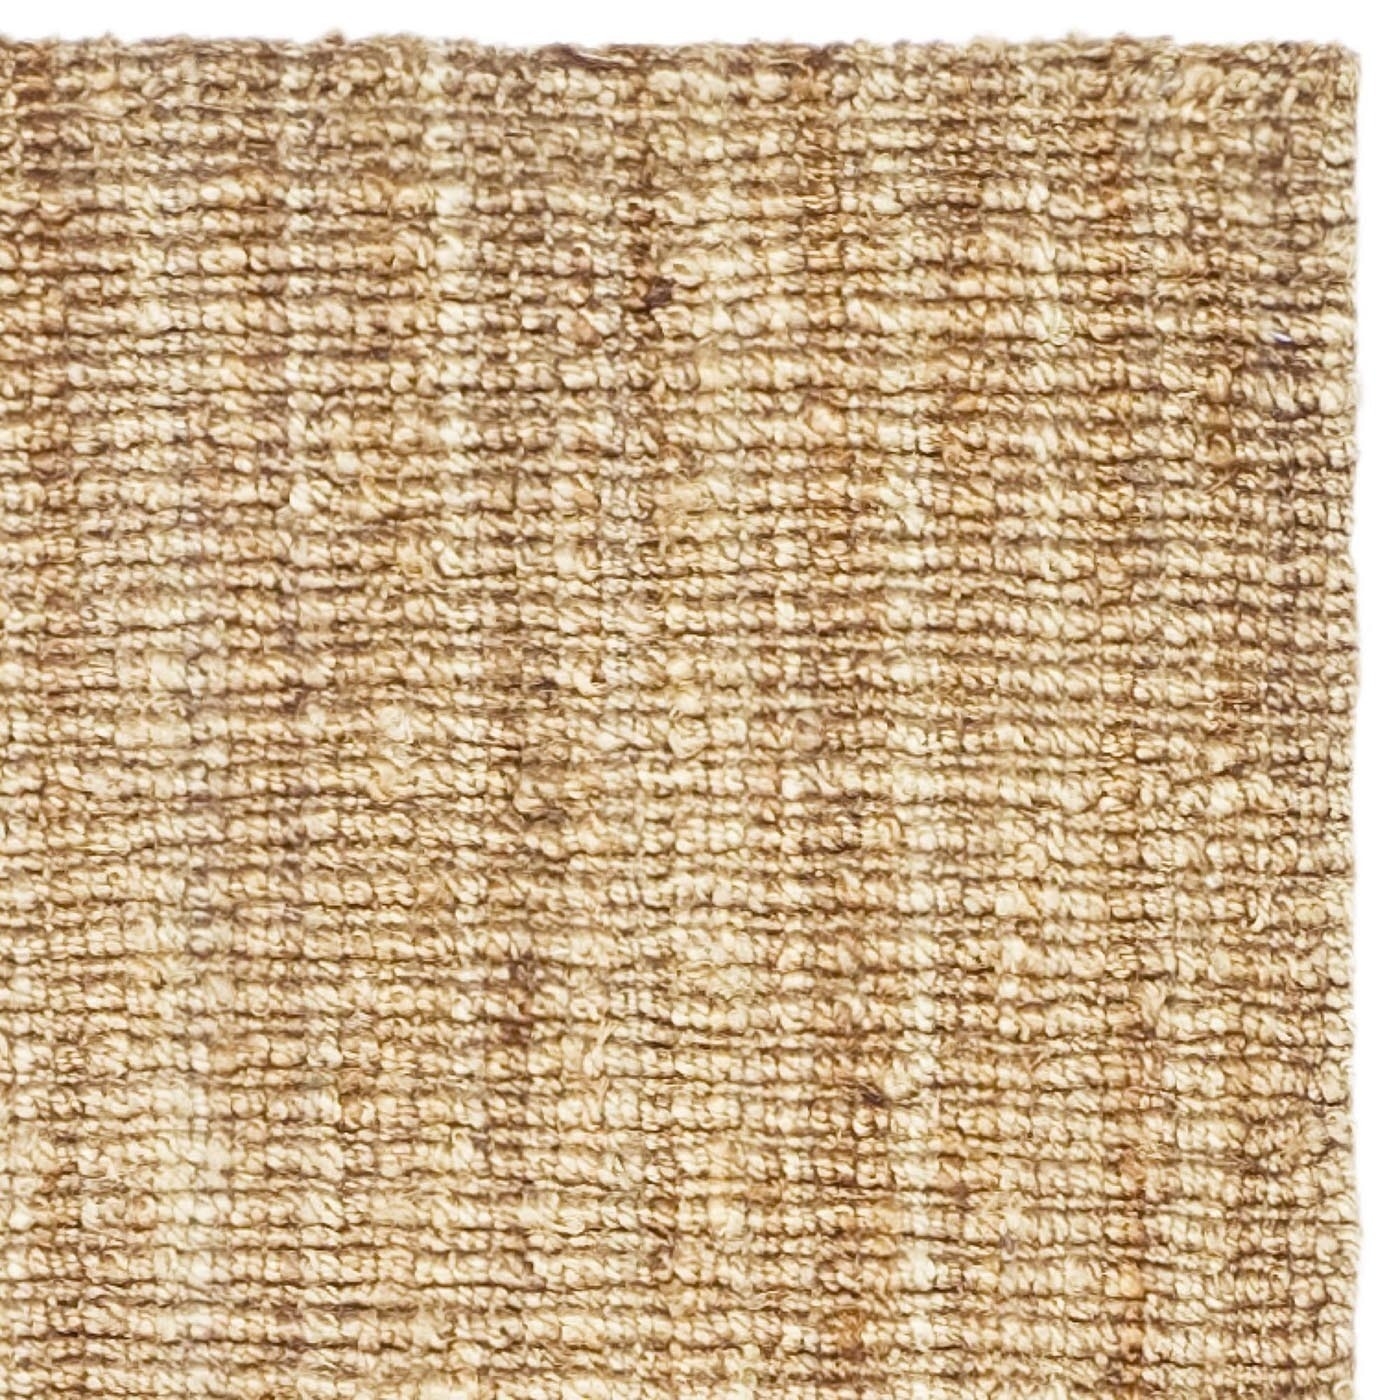 Safavieh Natural Fiber Hand-Woven Chunky Jute Runner Rug (2'6 x 8') - Image 1